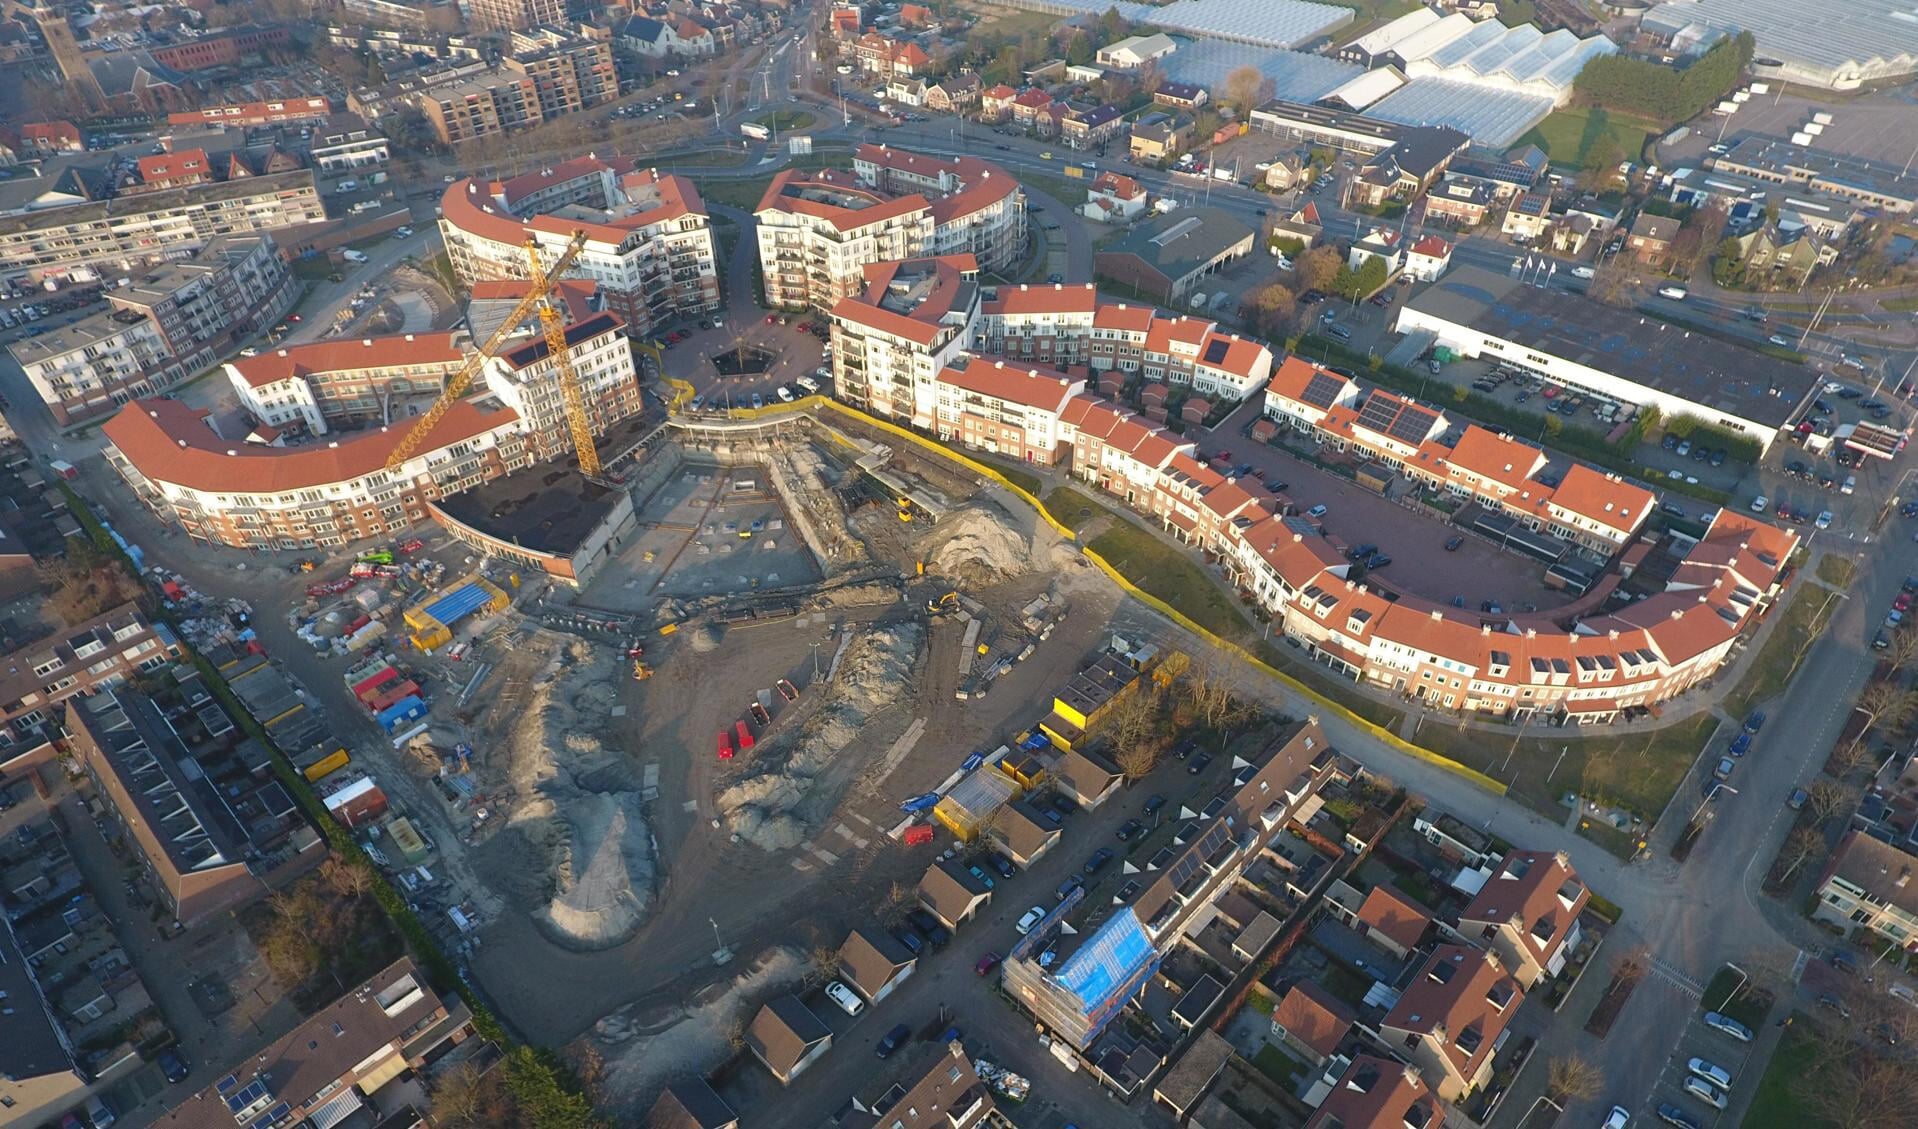 Nieuwbouwwijk De Bloem in aanbouw – maart 2018
